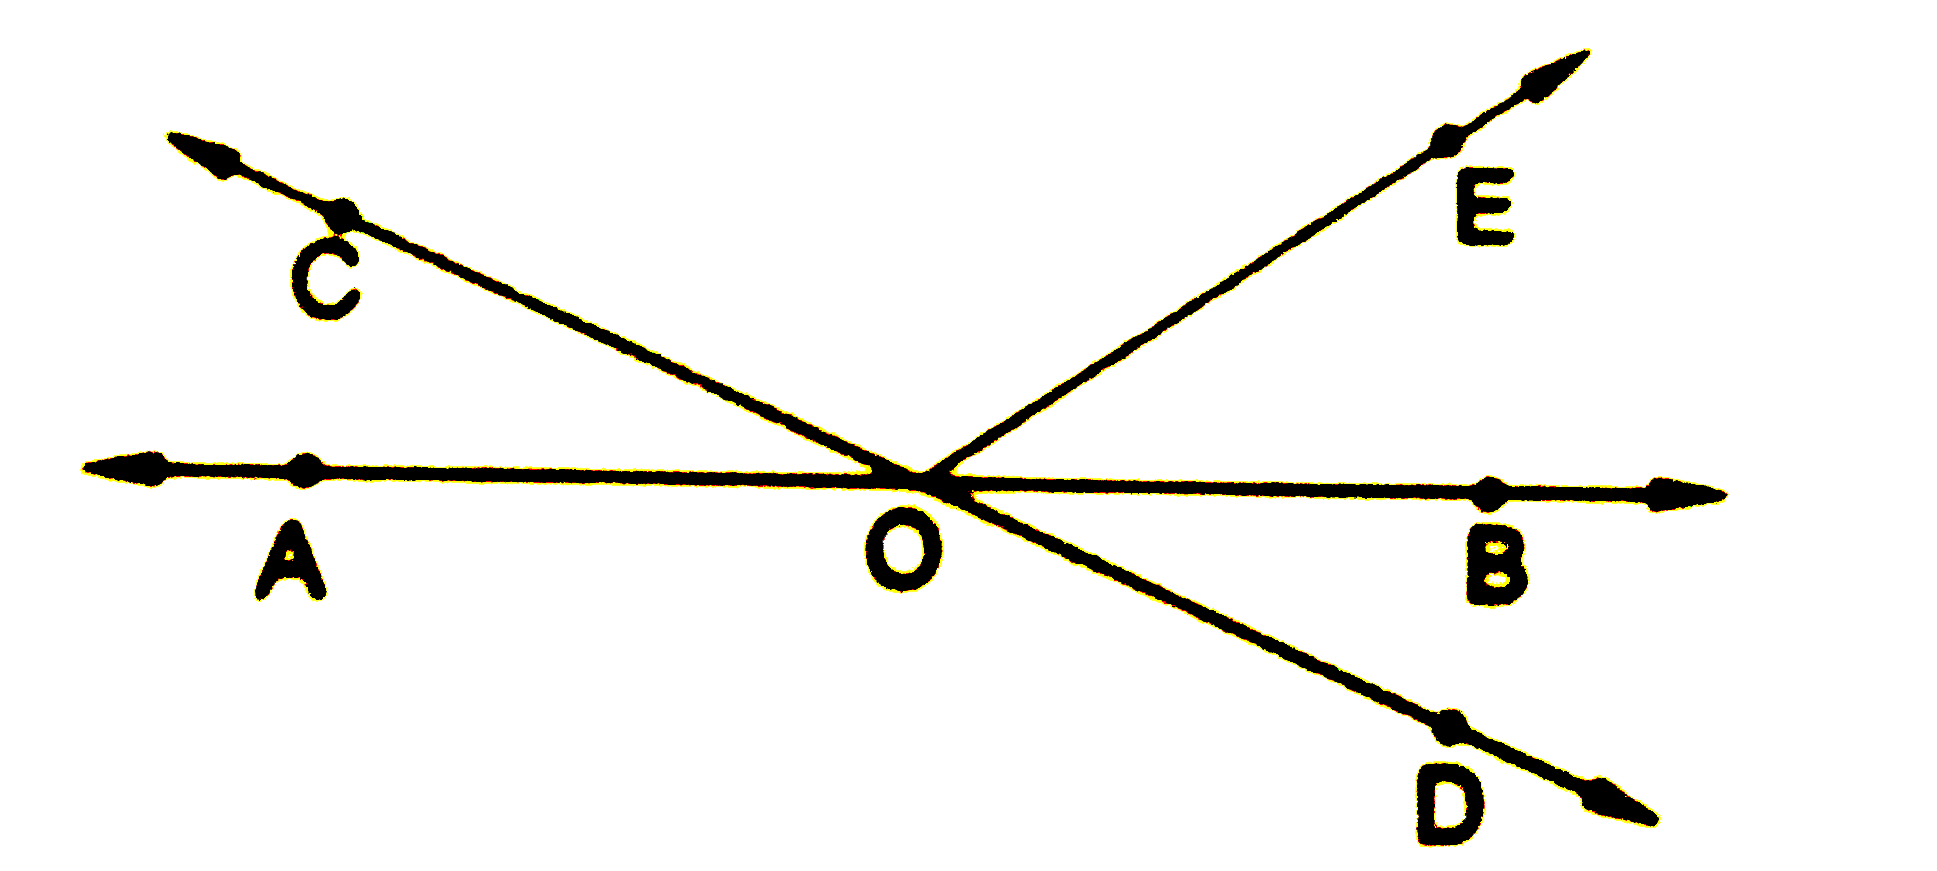 चित्र  में, रेखाएं AB तथा CD , बिंदु O पर प्रतिच्छेद करती है|यदि  angle AOC + angle BOE =70^(@)    और  angle BOD =40^(@)  हो, तो  angle BOE  तथा प्रतिवर्तित  angle COE  ज्ञात करें|